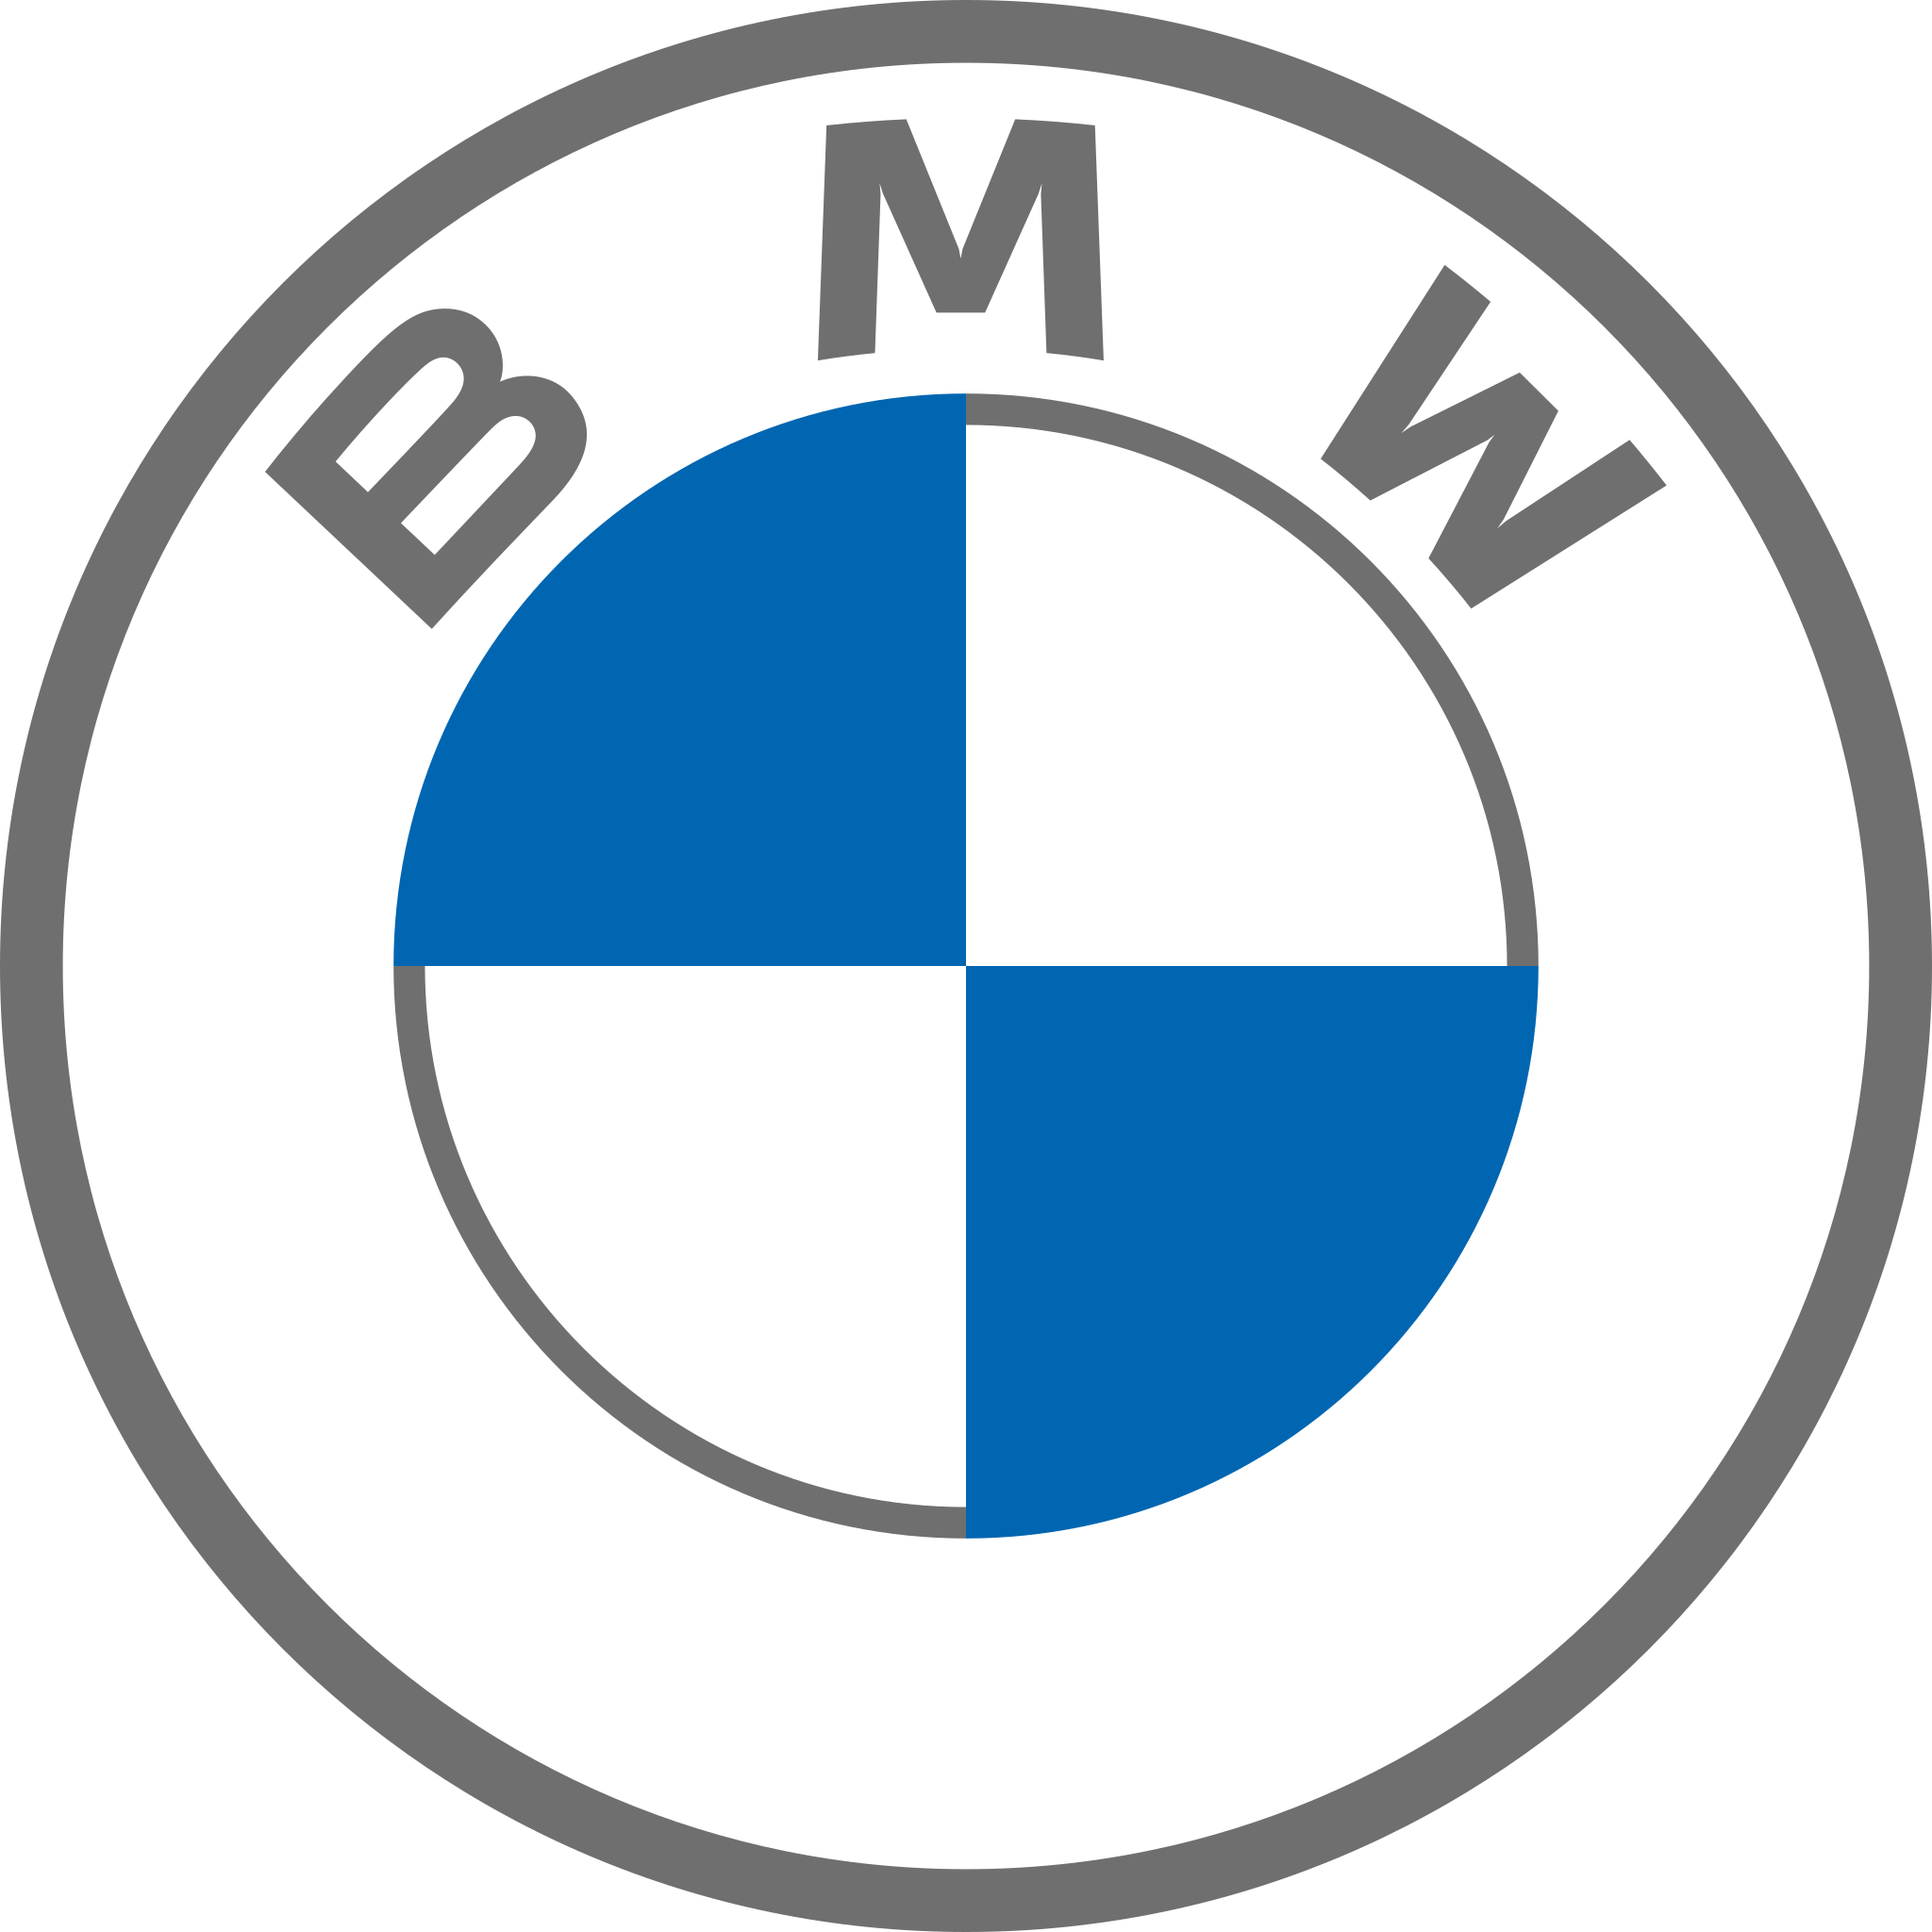 BMW JOY'N US